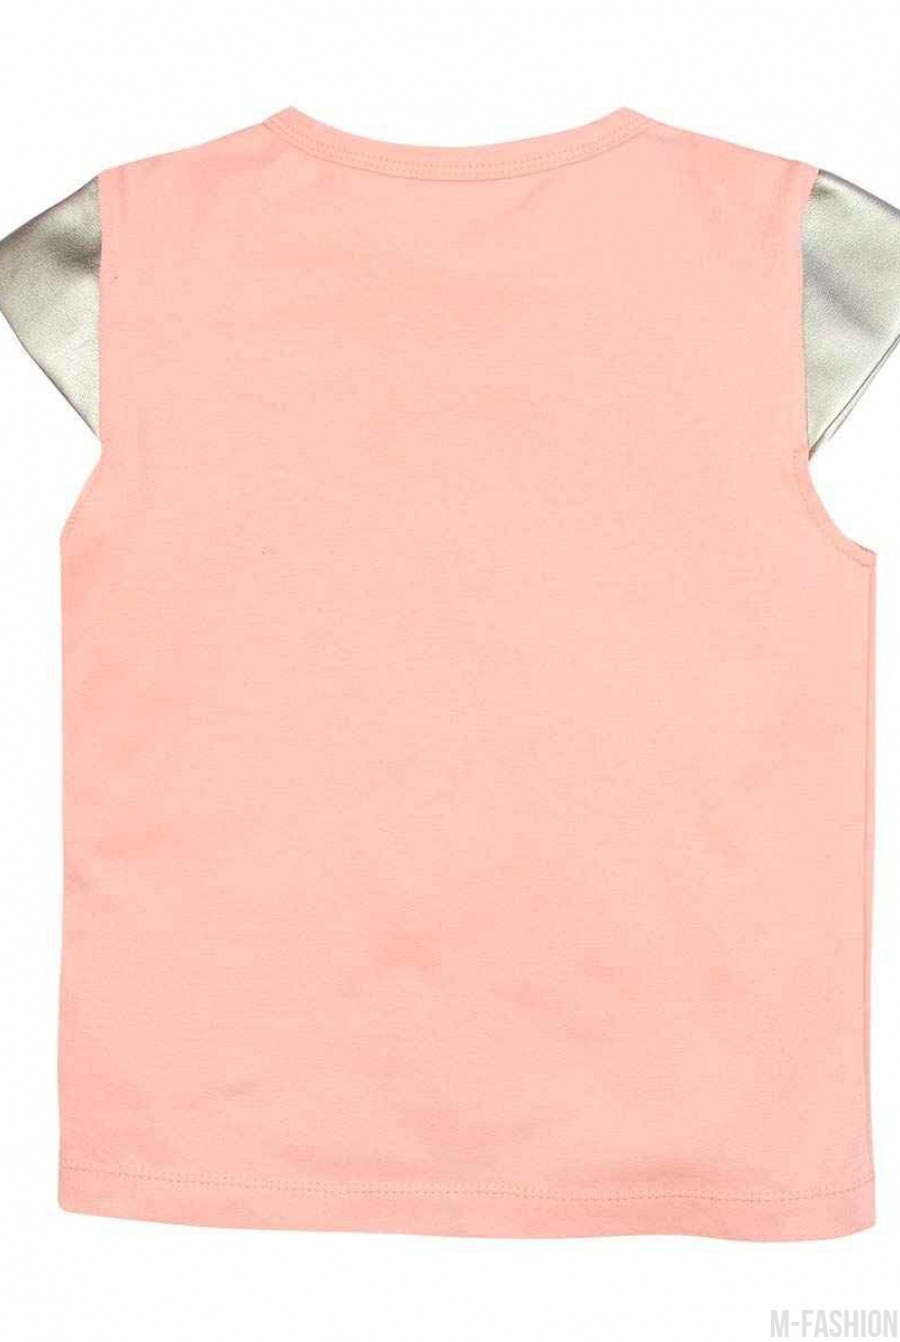 Персиковая трикотажная футболка с принтом и золотистыми короткими рукавами из эко-кожи- Фото 3